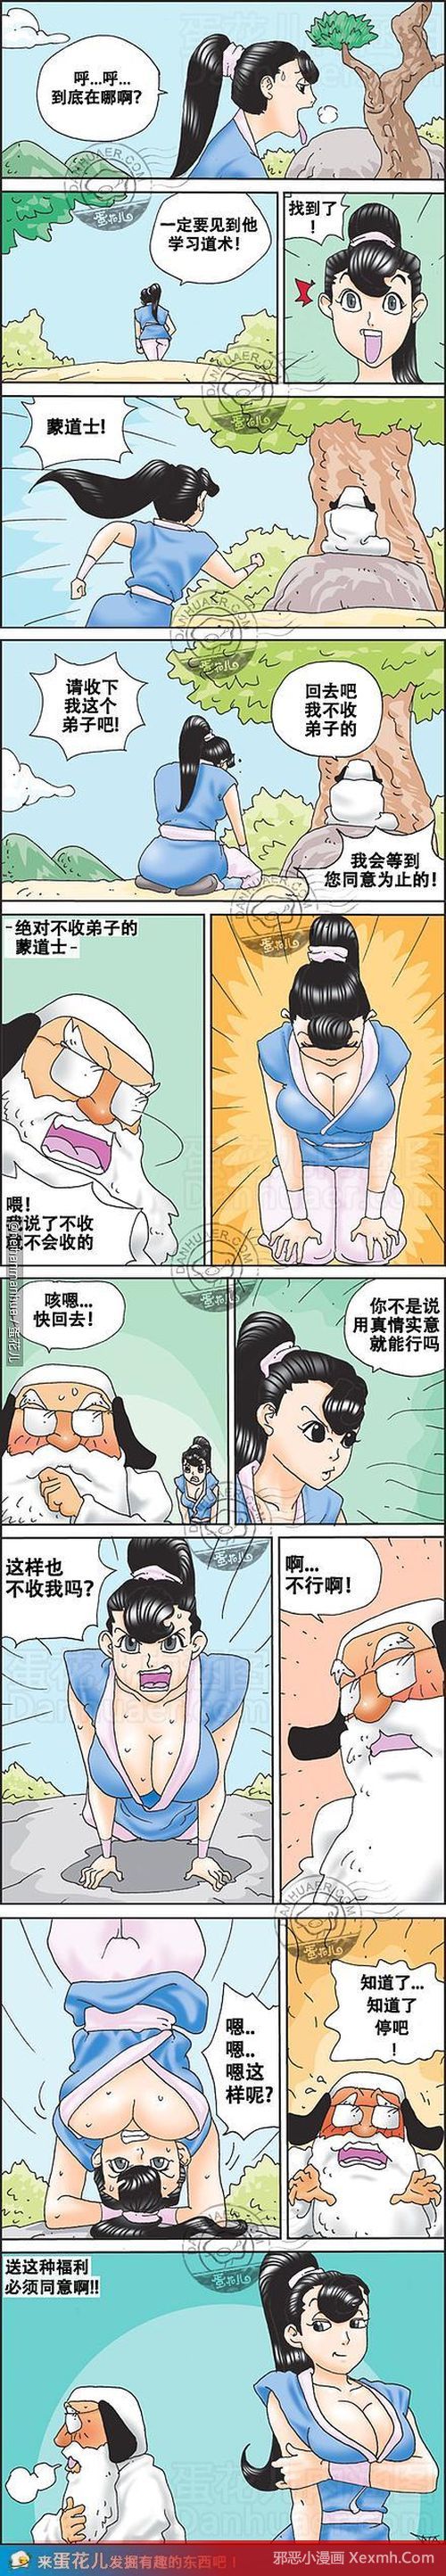 韩国邪恶小漫画